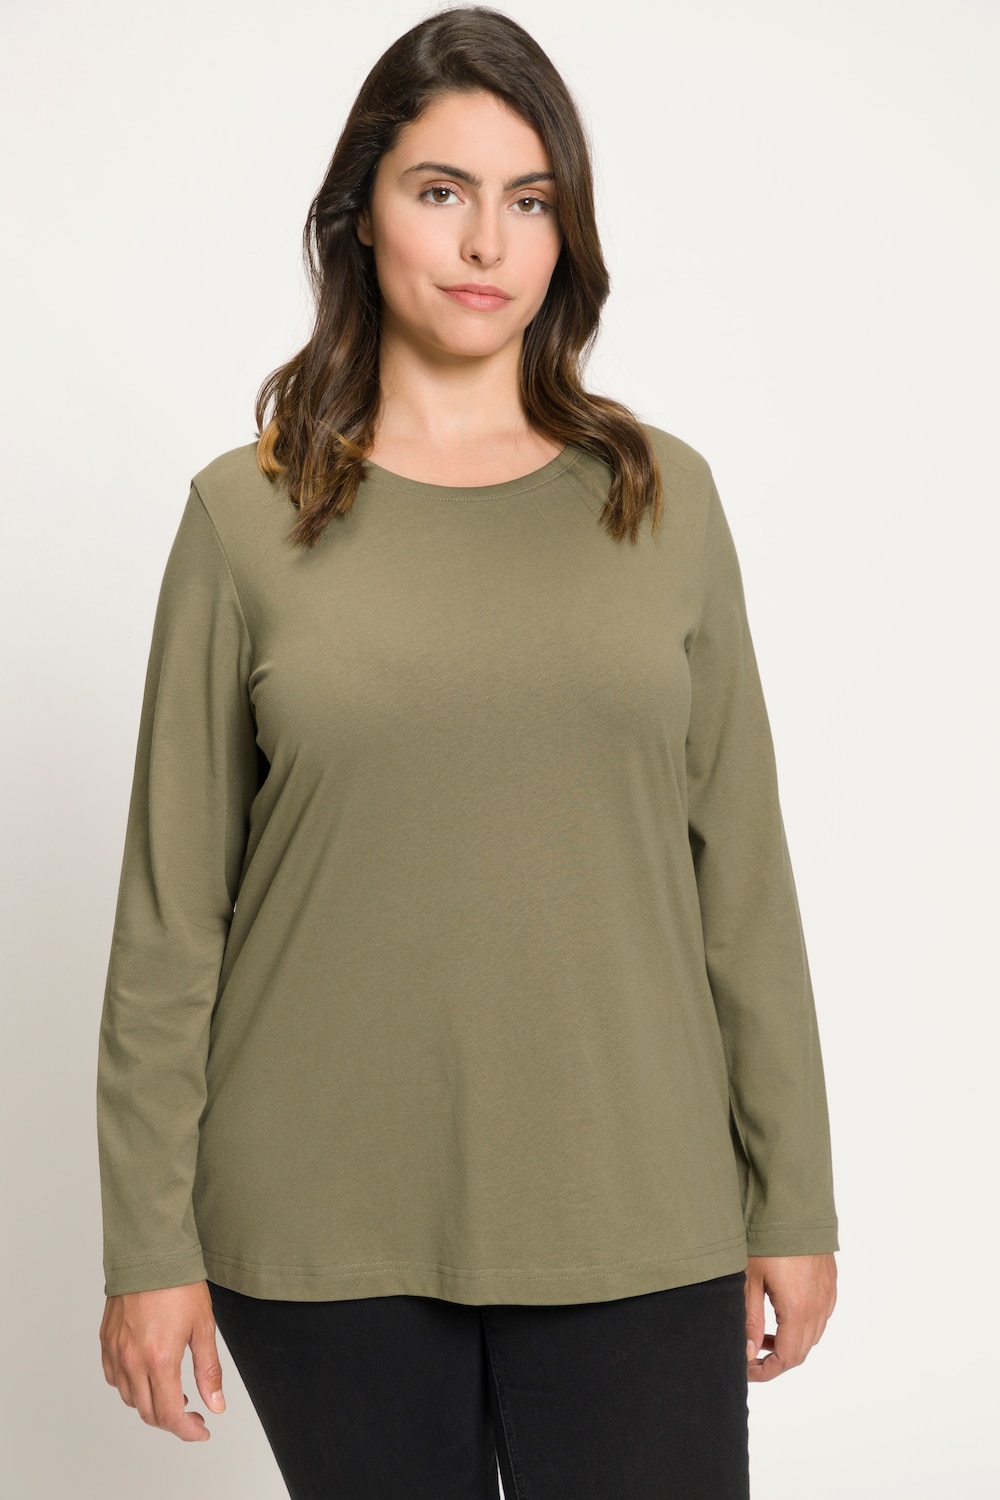 Grote Maten shirt, Dames, groen, Maat: 58/60, Ulla Popken